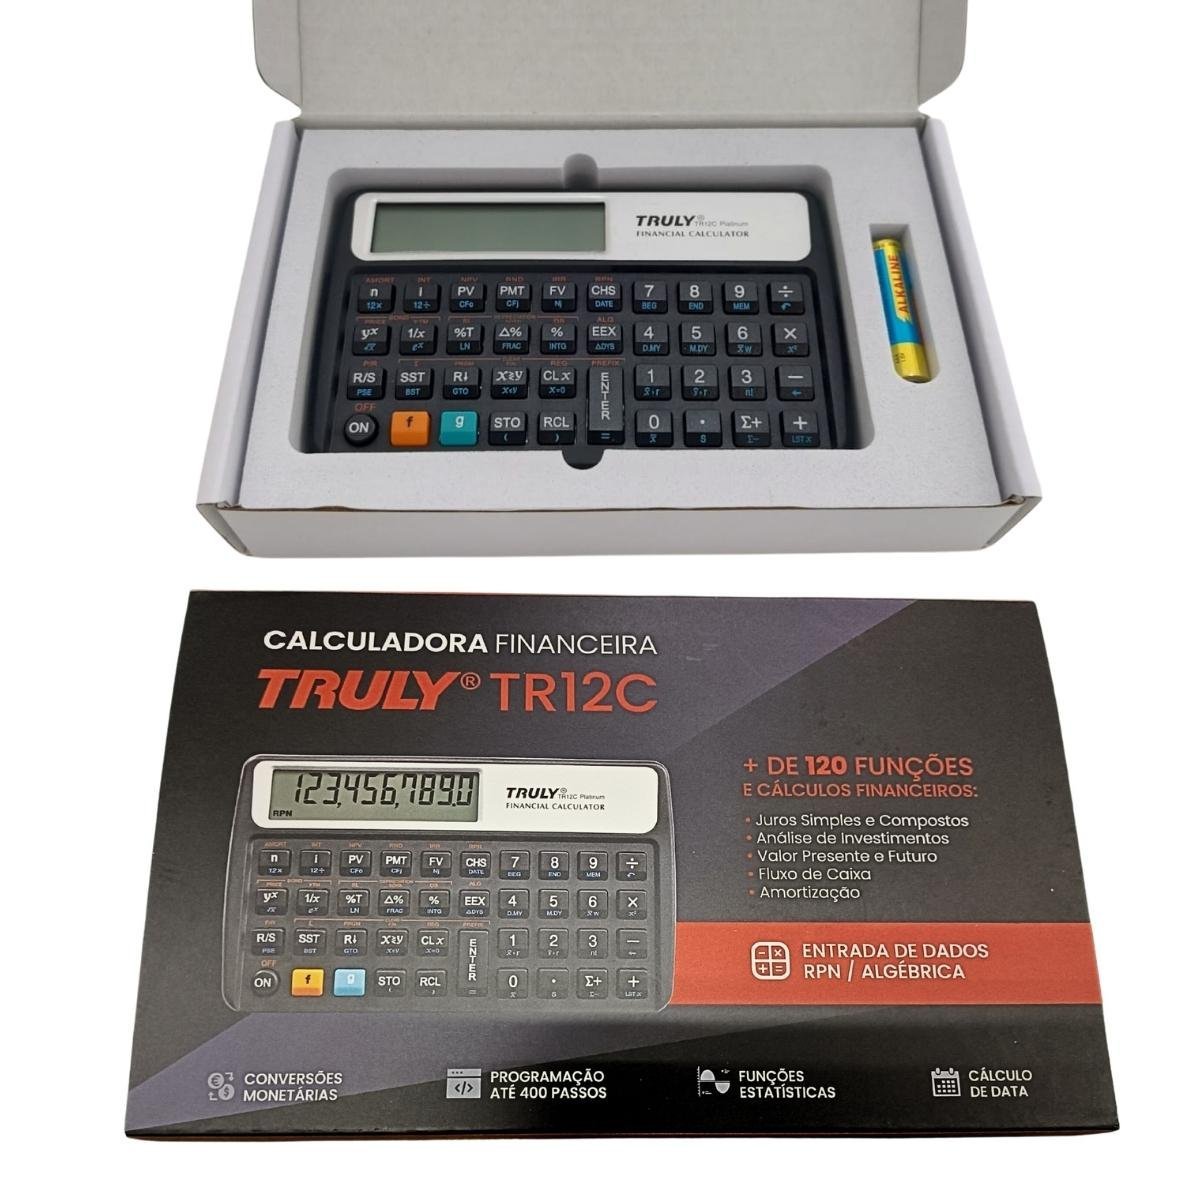 Calculadora Financeira Truly Tr12c Platinum +120 Funções Rpn - 3